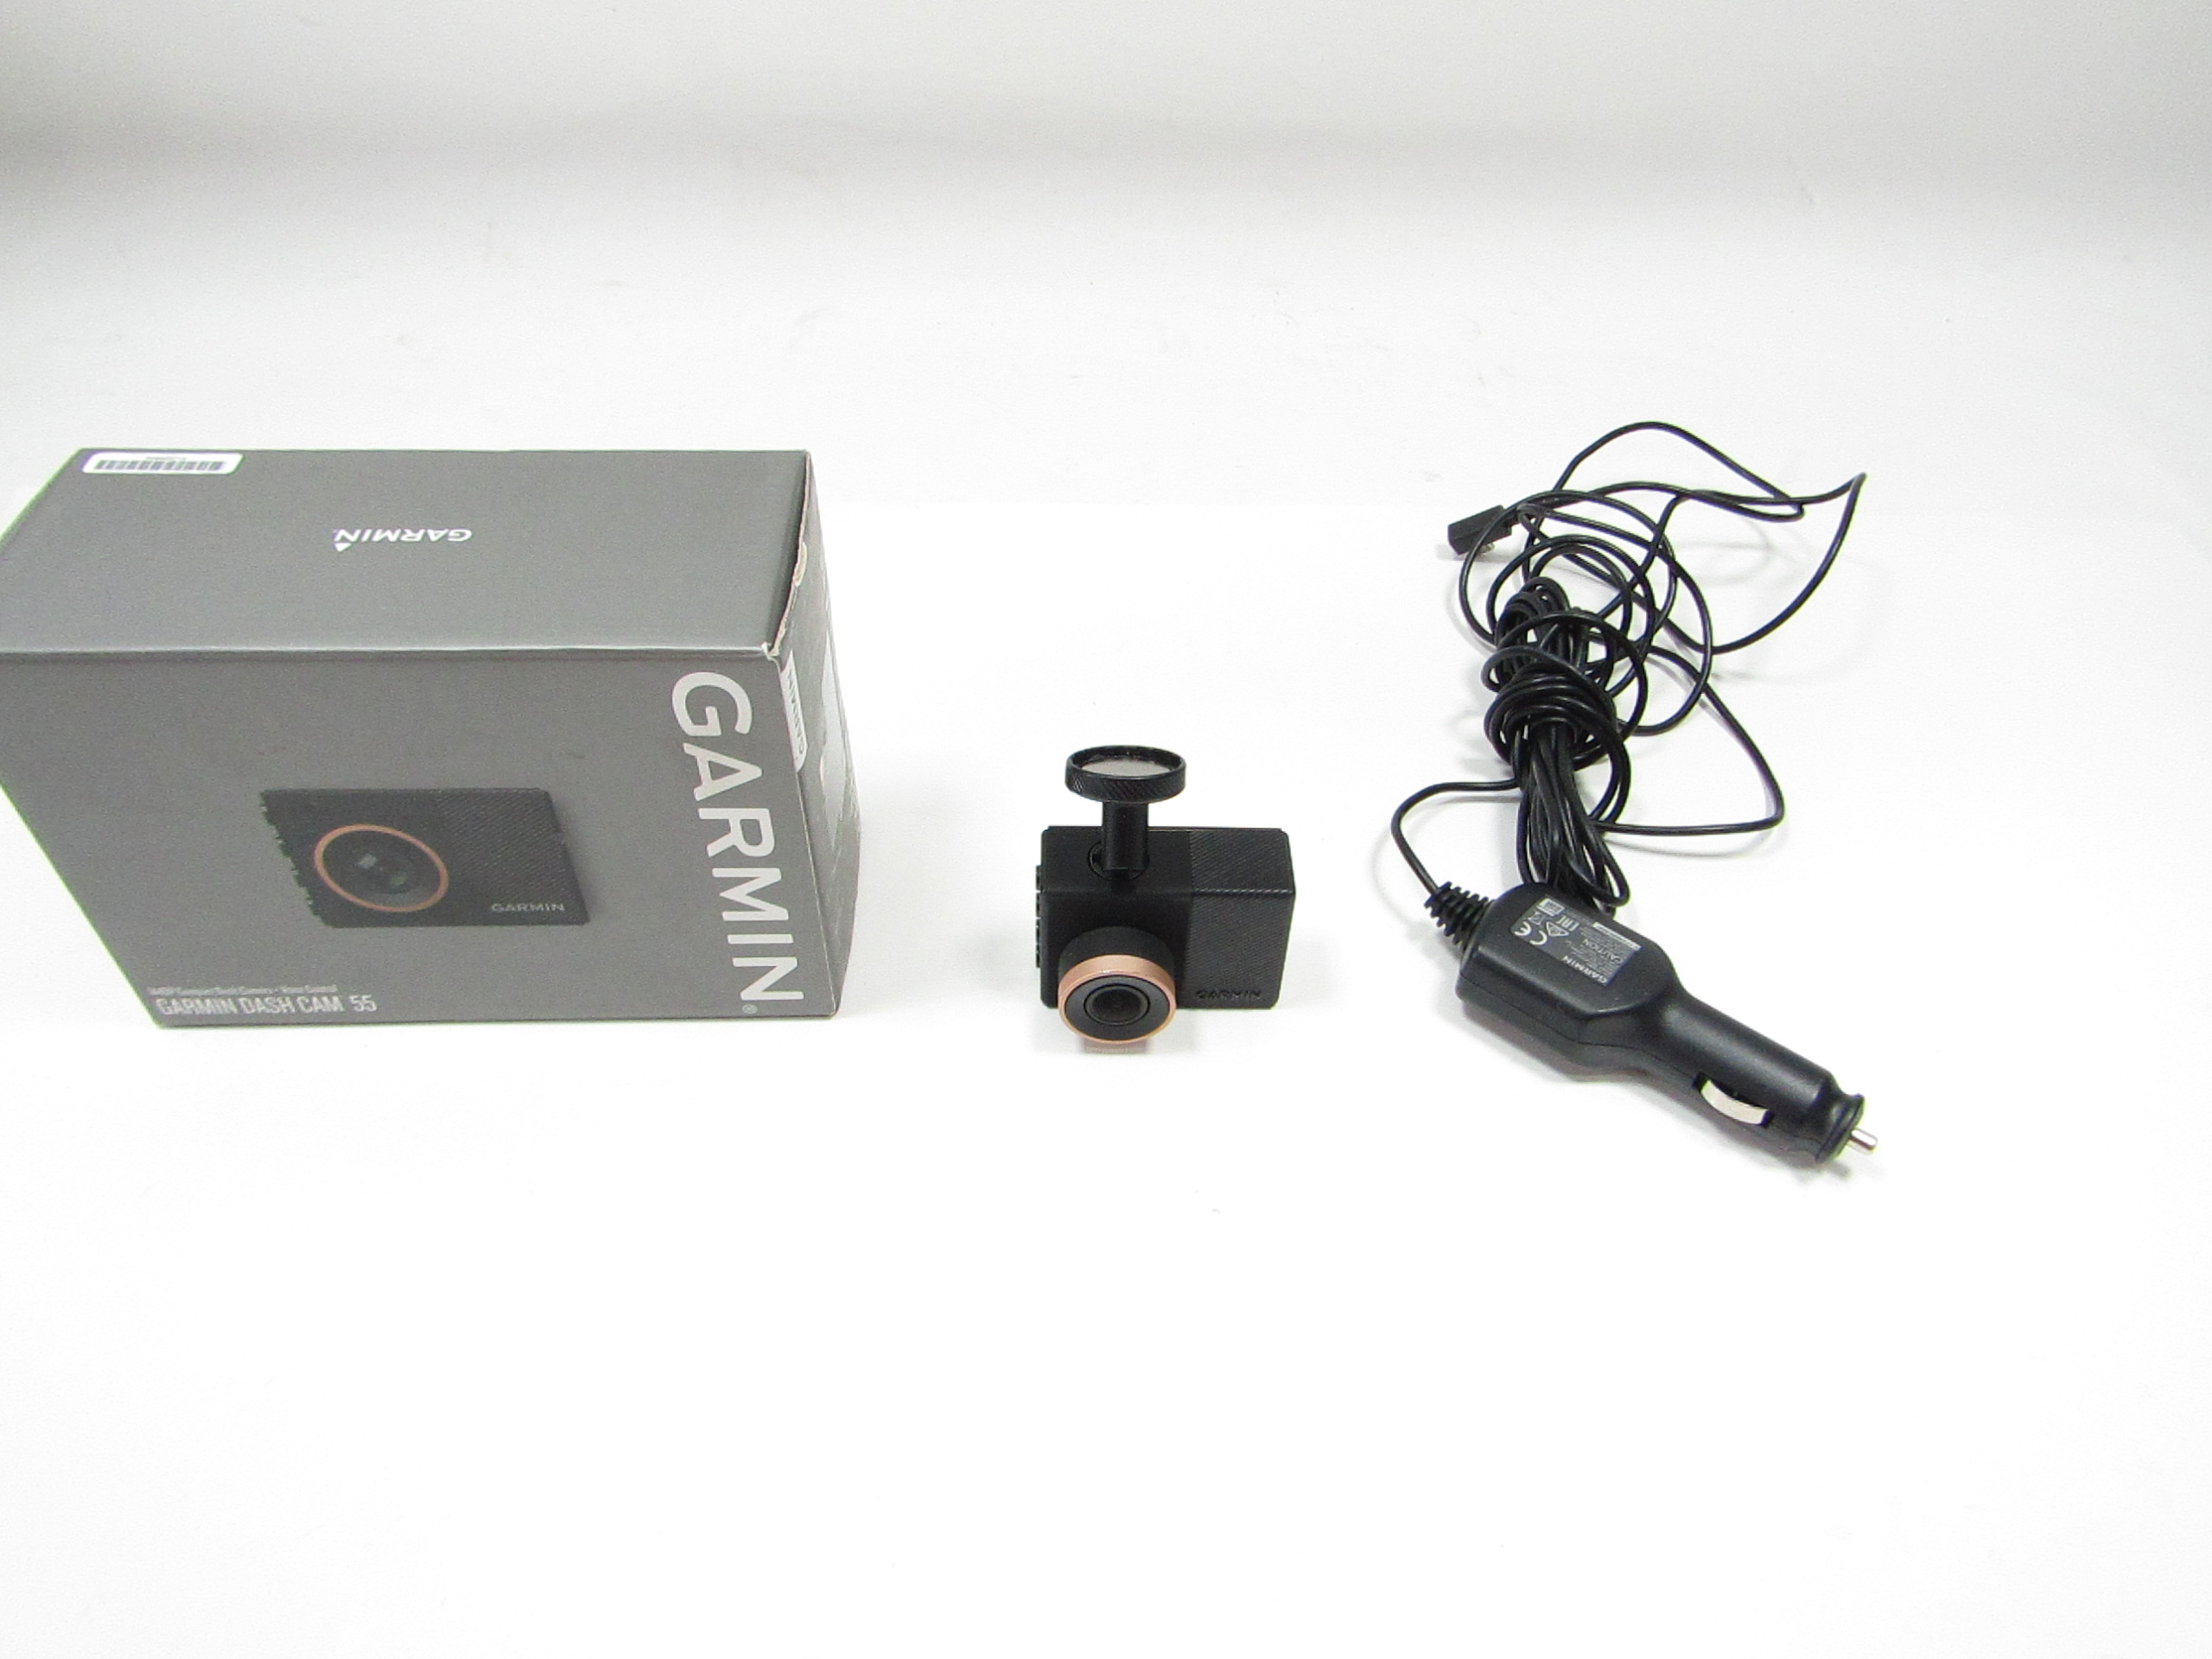 Garmin Dash Cam 55 1440p Compact Dash Camera + Voice Control